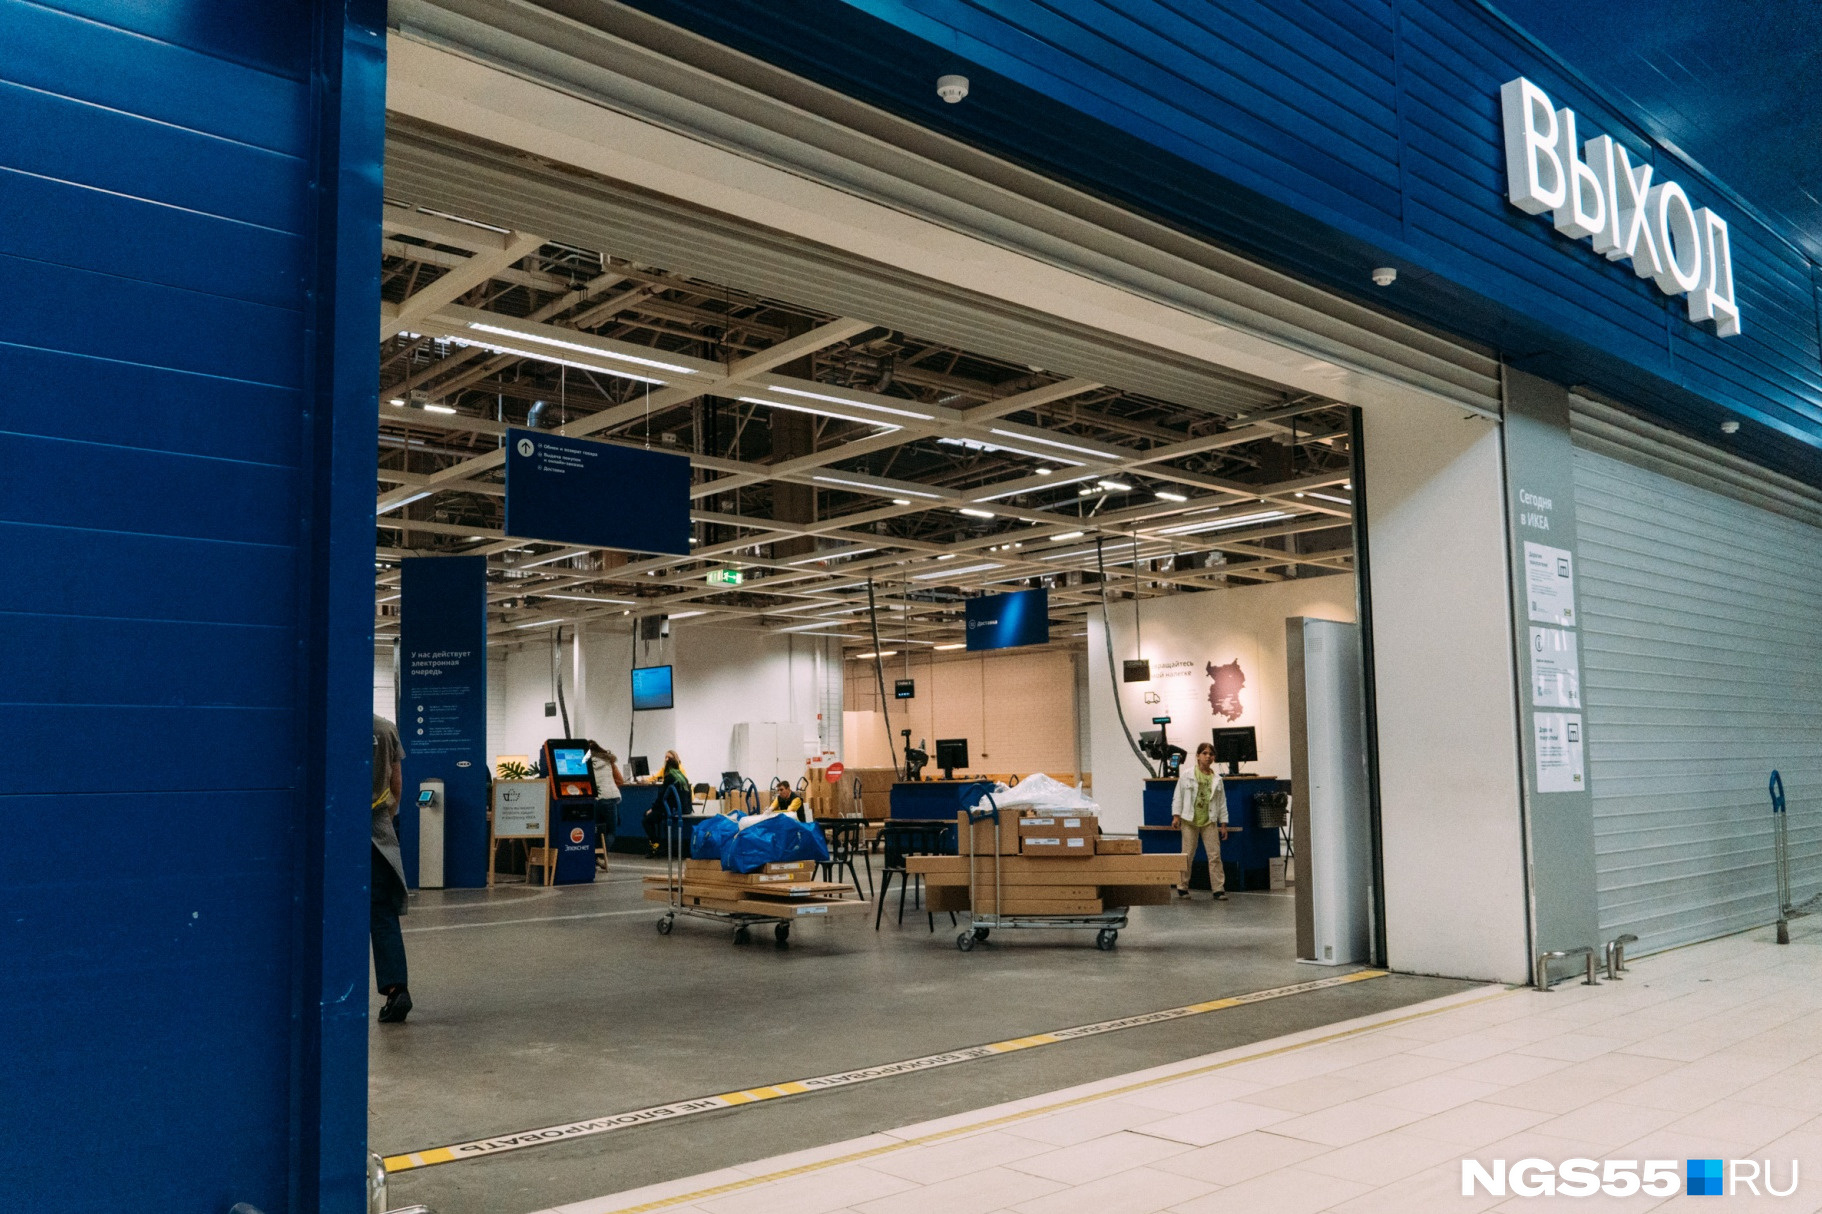 После распродажи для сотрудников магазины IKEA открылись и обычным людям — но только в онлайн-формате